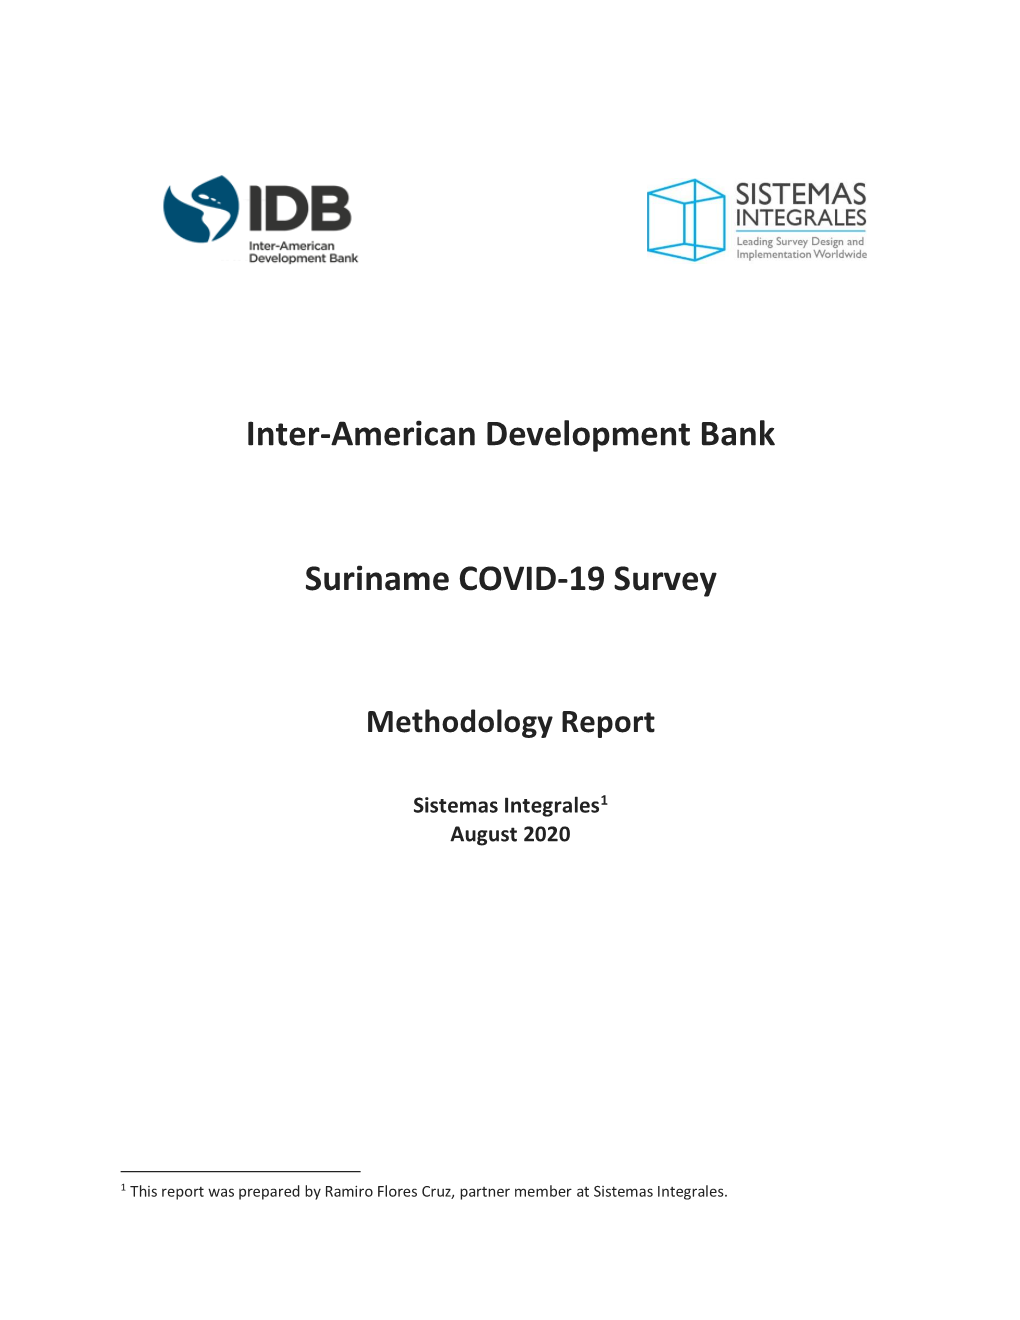 Download Methodology Report